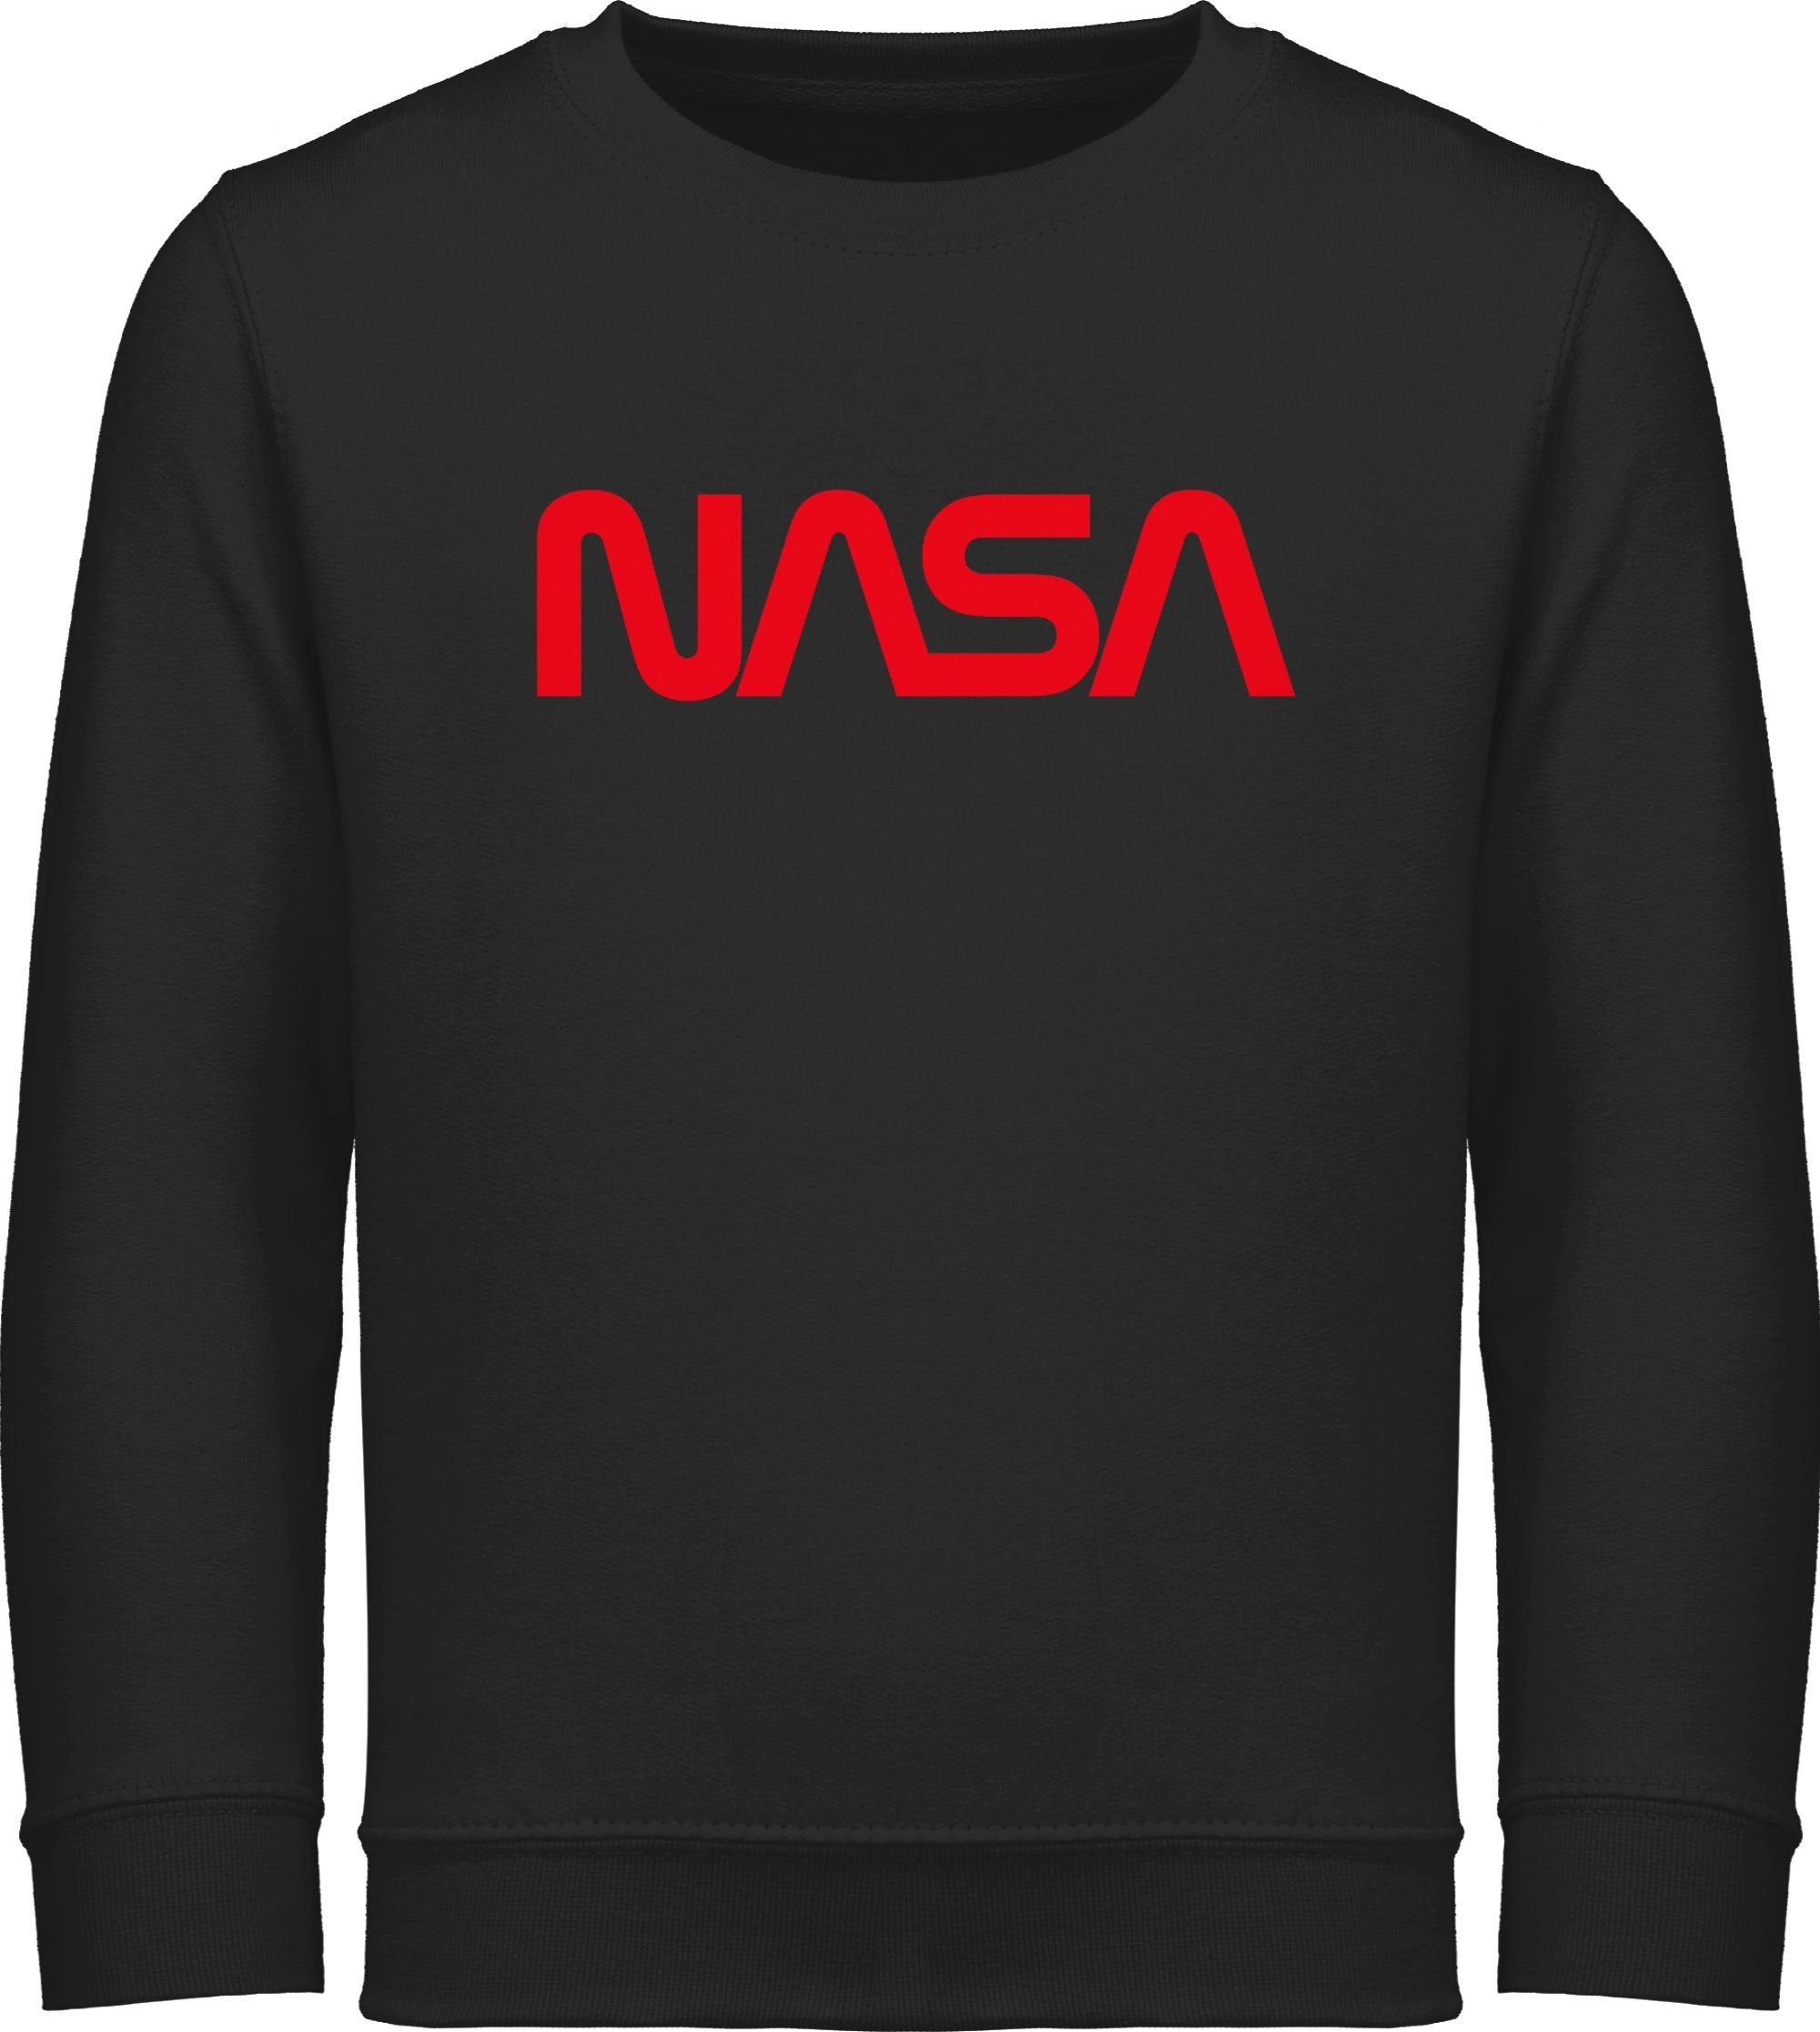 Mondlandung Sweatshirt Co Astronaut Weltraum Raumfahrt Kinderkleidung Schwarz - Shirtracer Nasa und 1